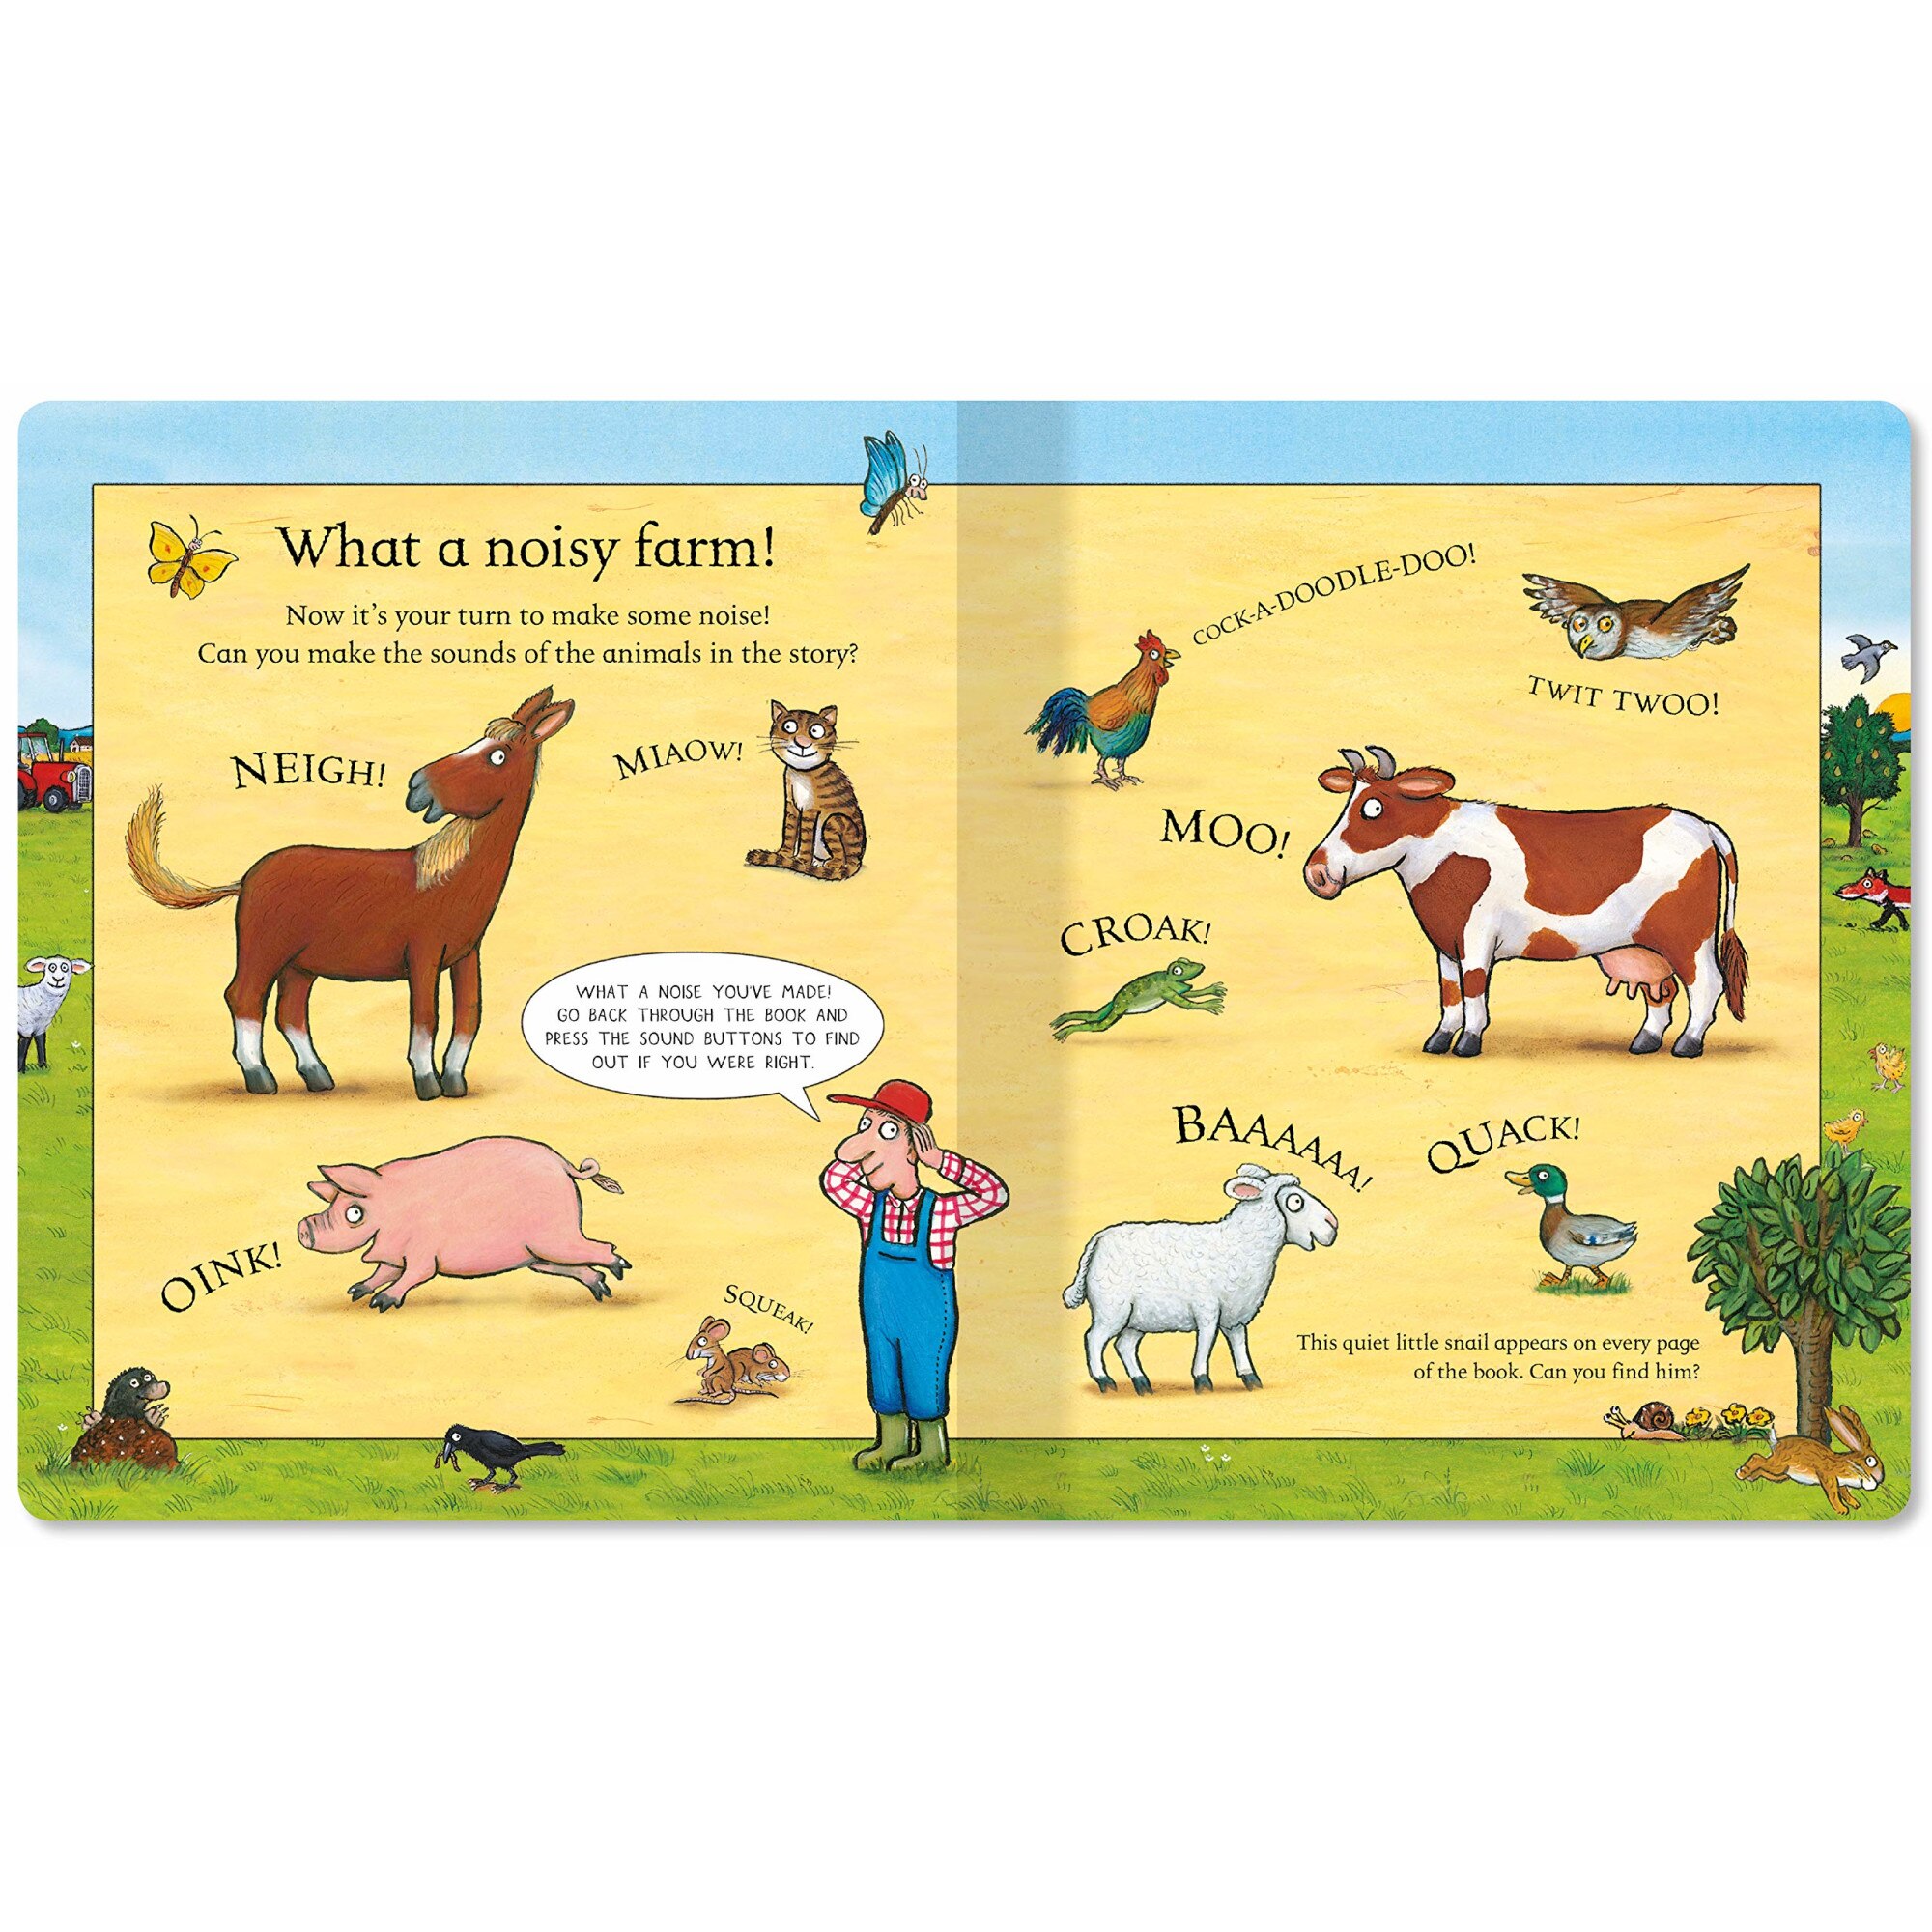 книжка　press-the　илюстрована　Детска　Scheffler,　Book　A　book　Английски,　Campbell　The　Axel　Farm　Noisy　sound　page　+3г